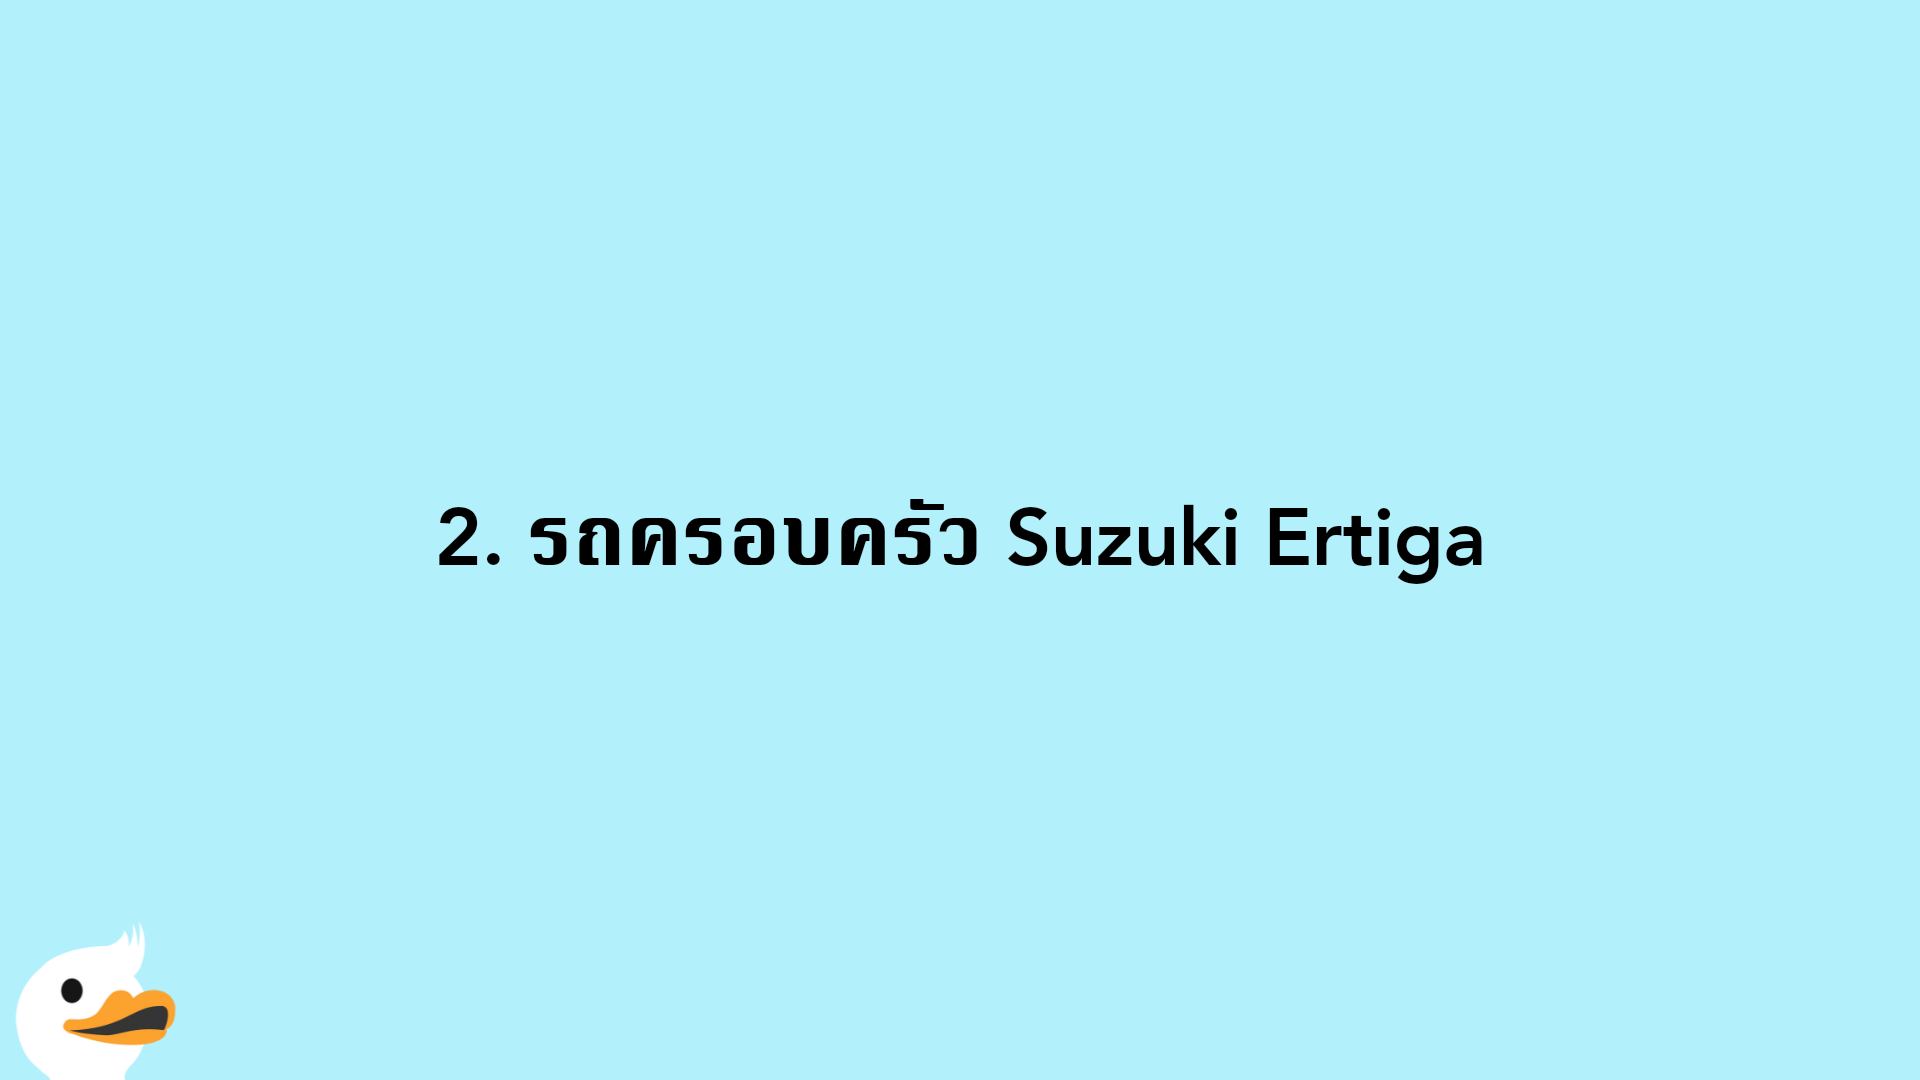 2. รถครอบครัว Suzuki Ertiga